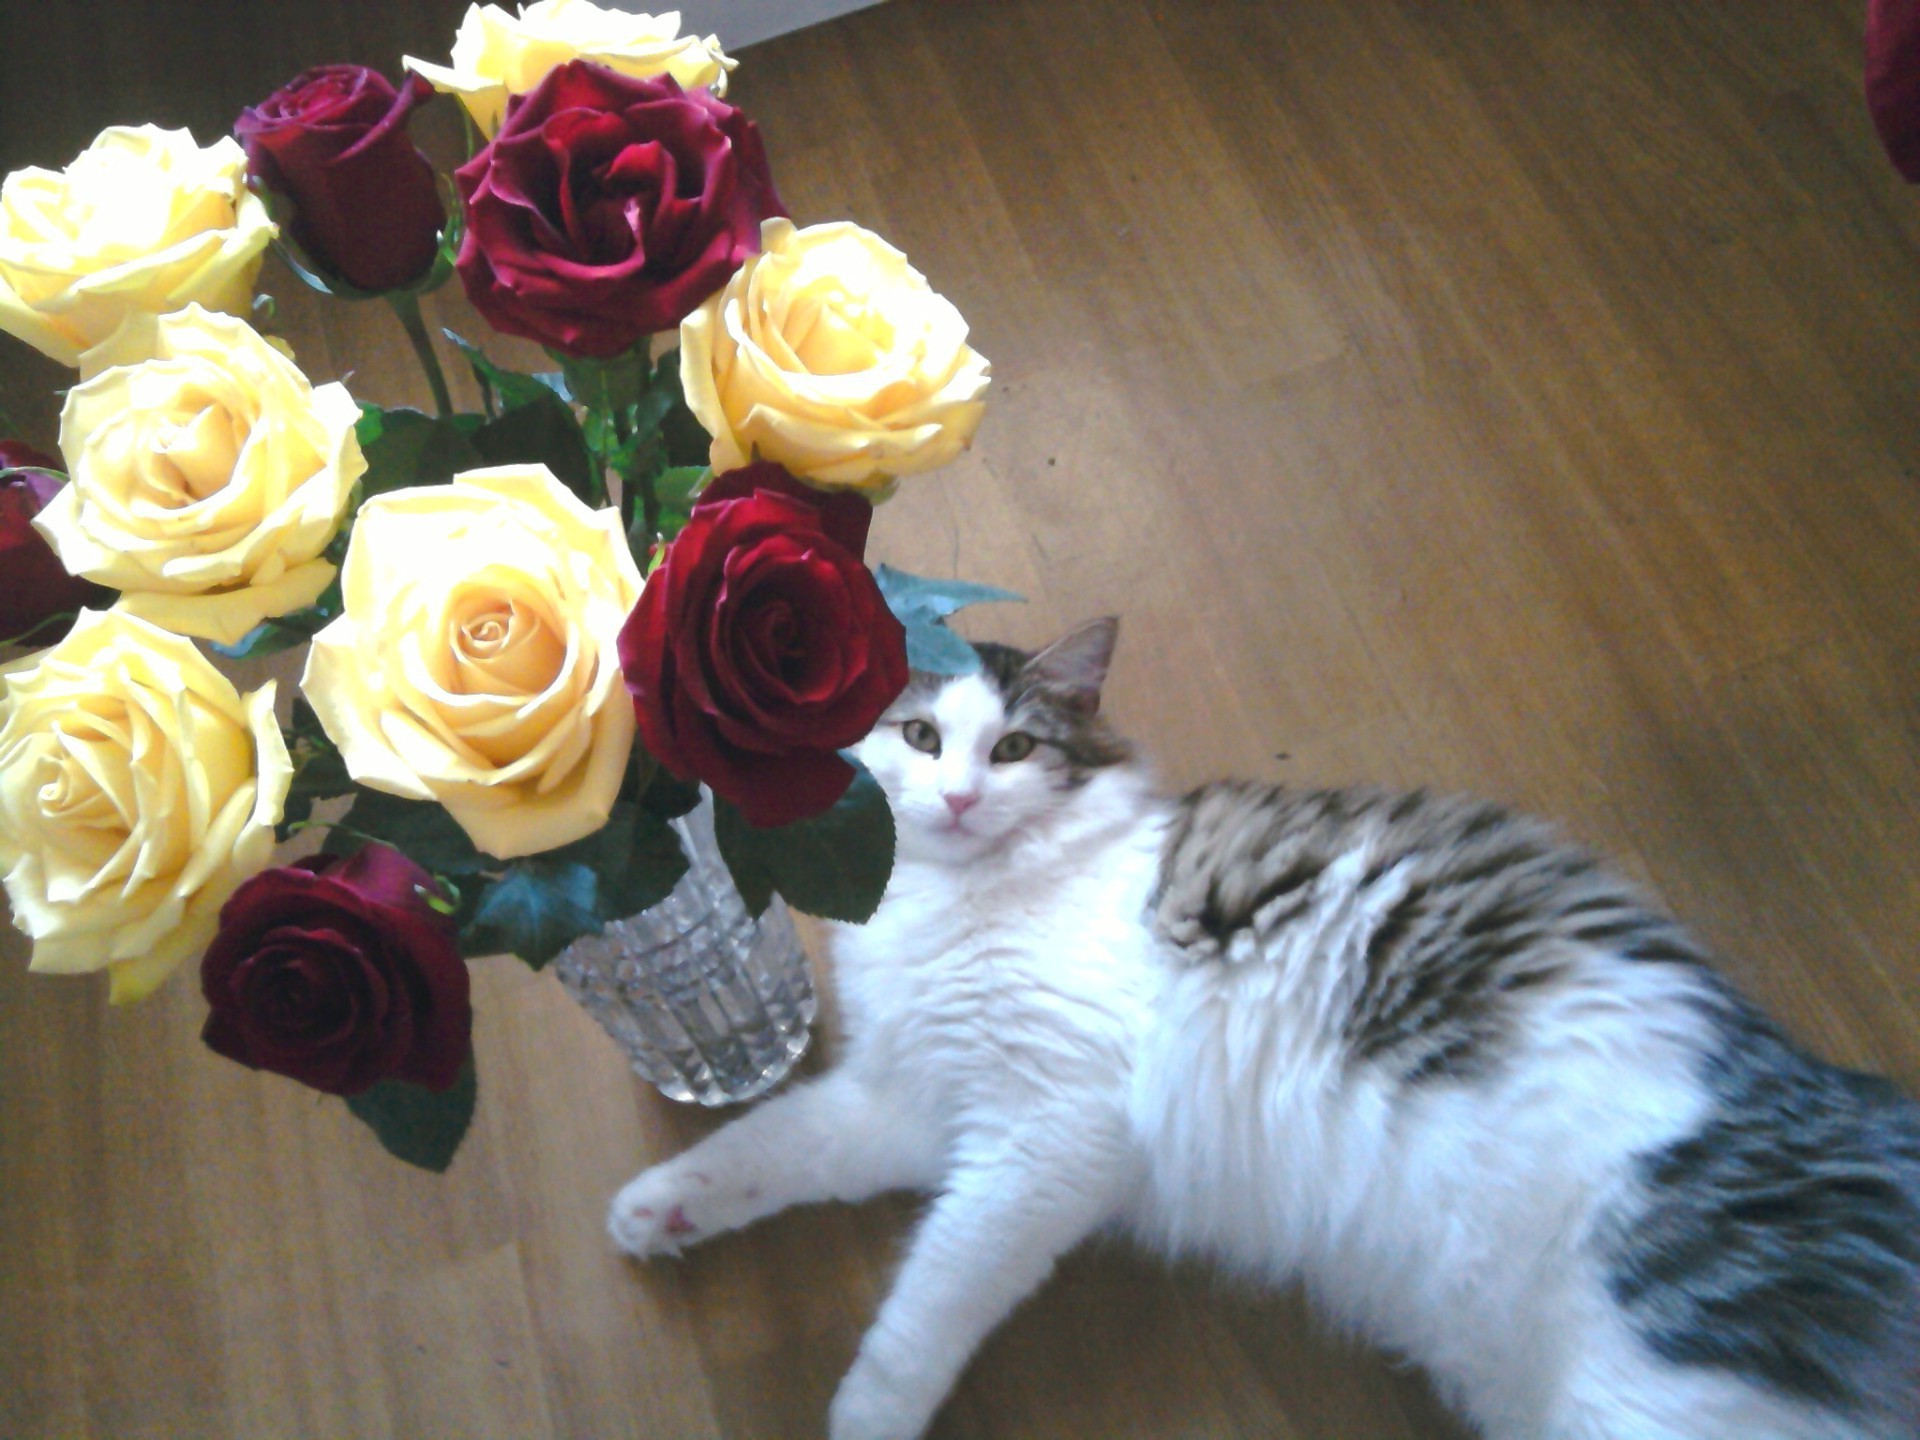 animals rose love flower wedding